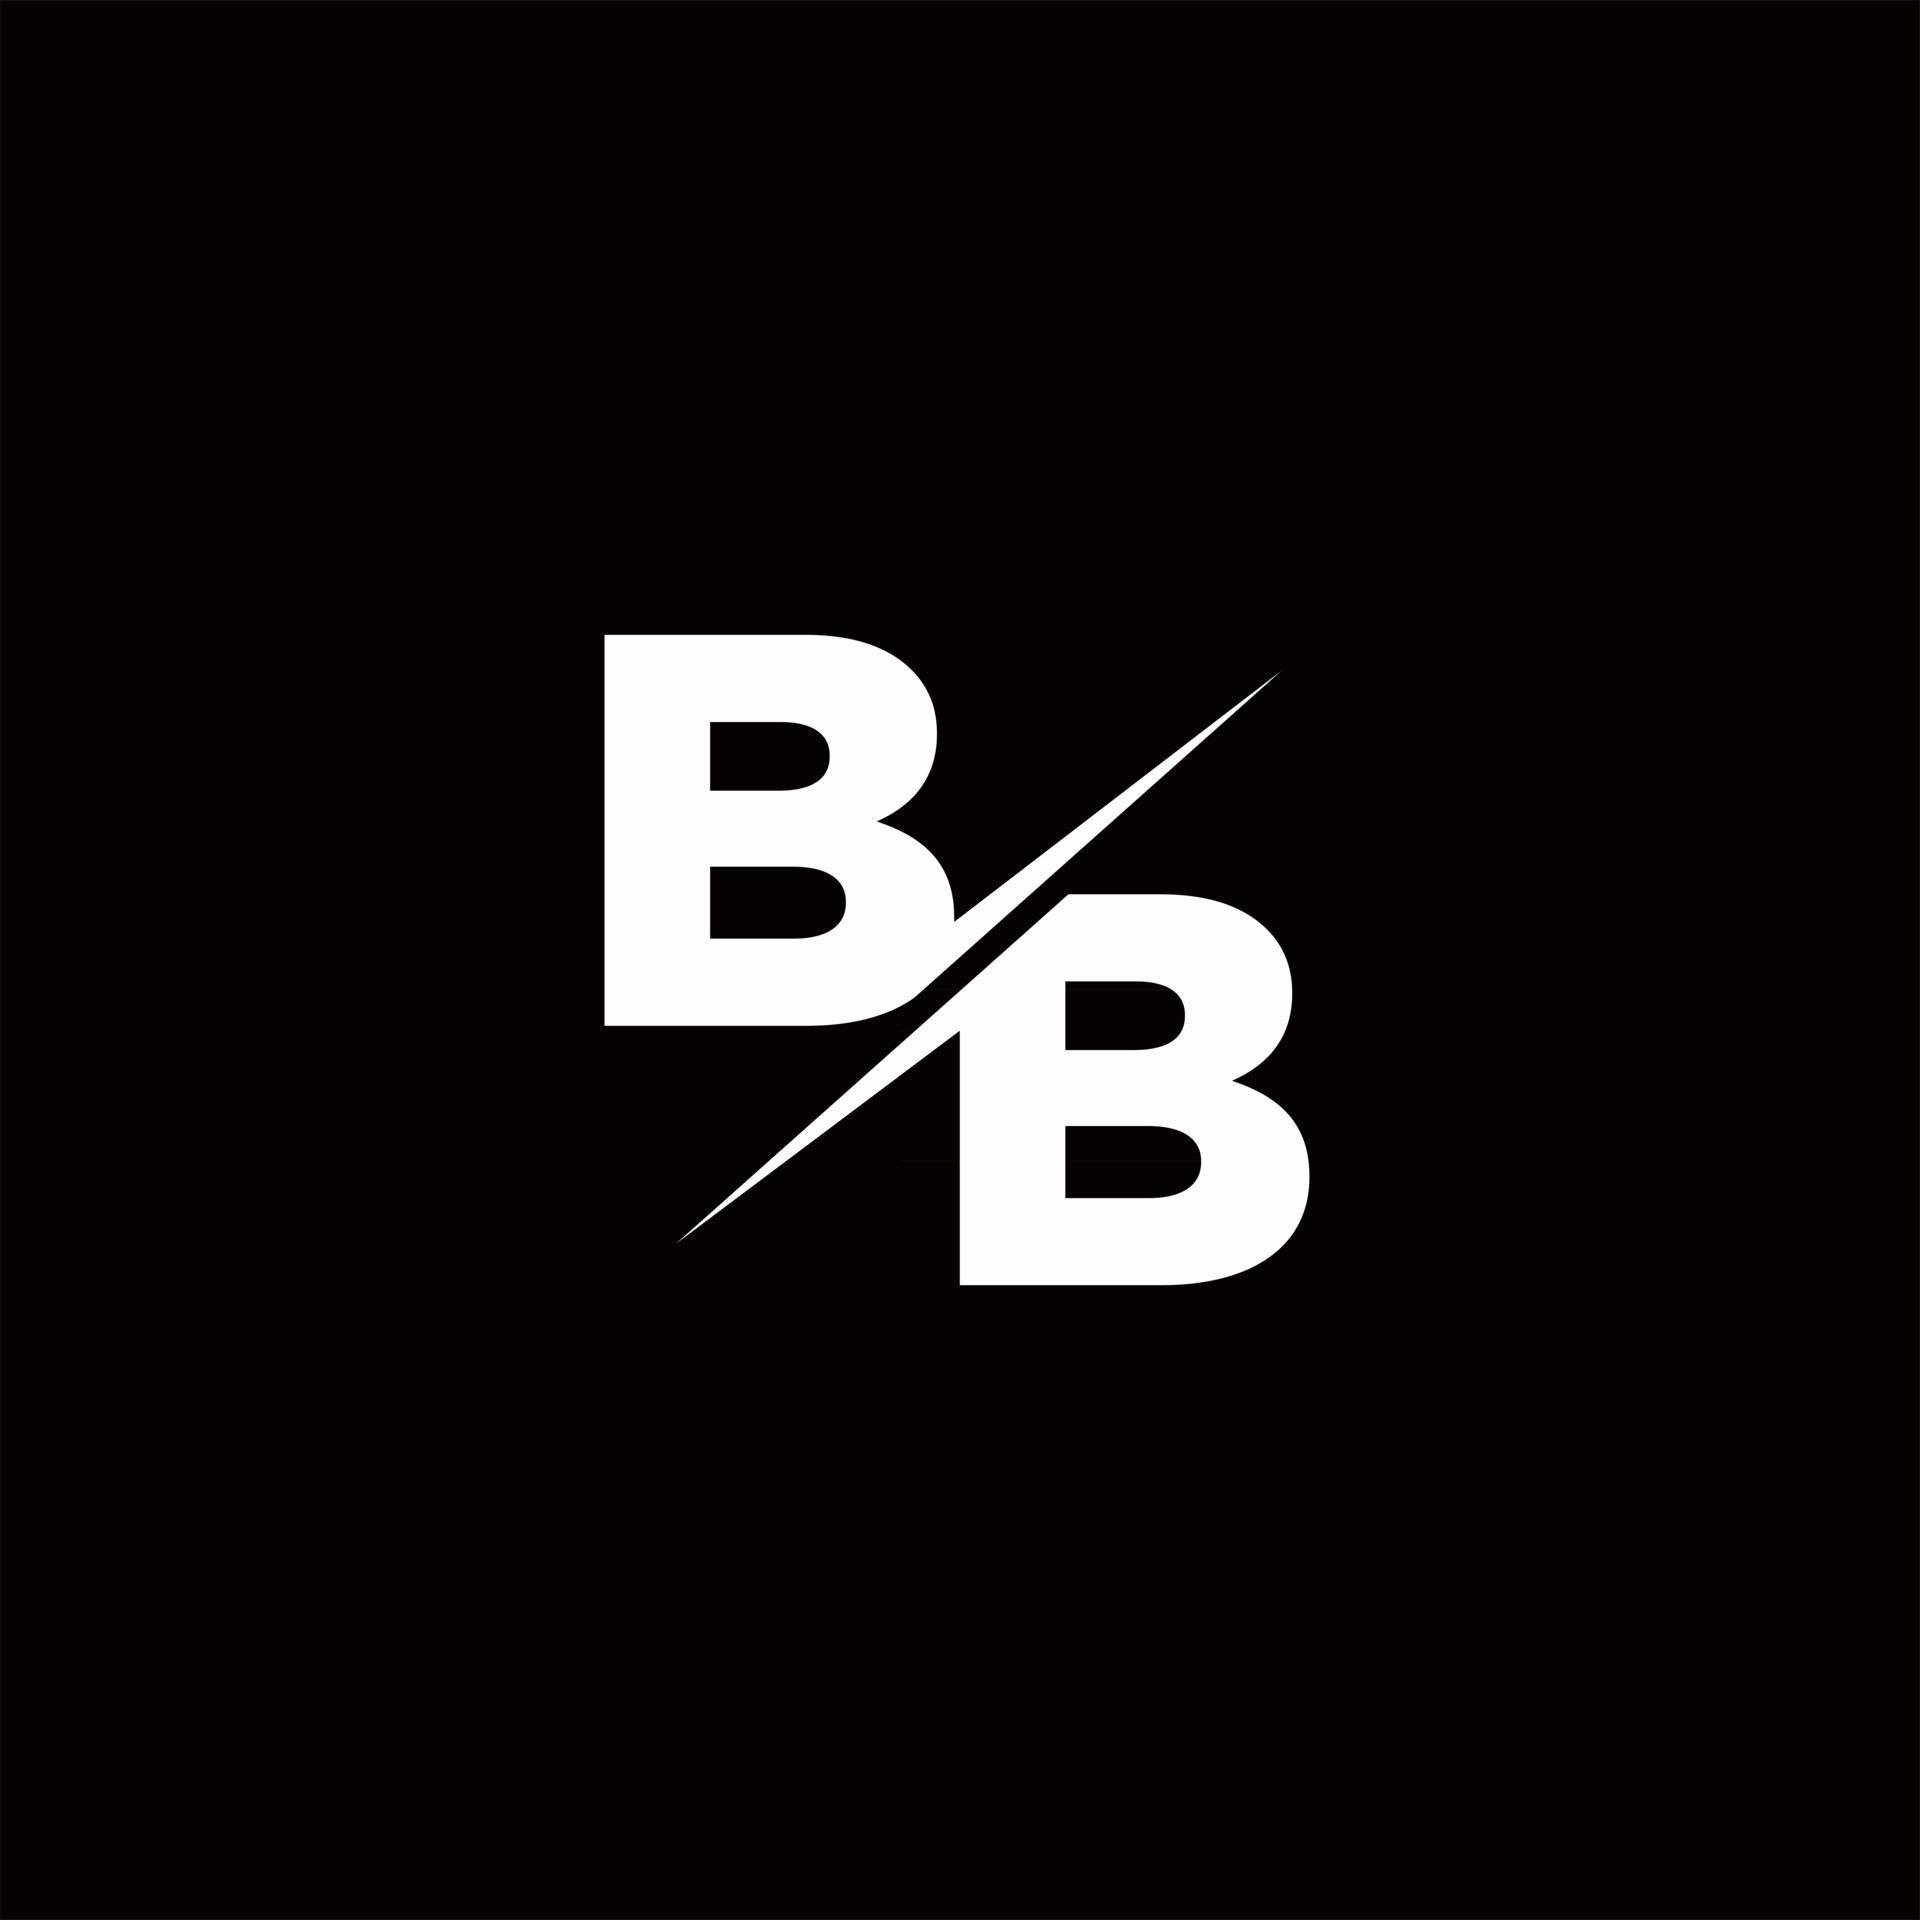 bb logo ideas 1